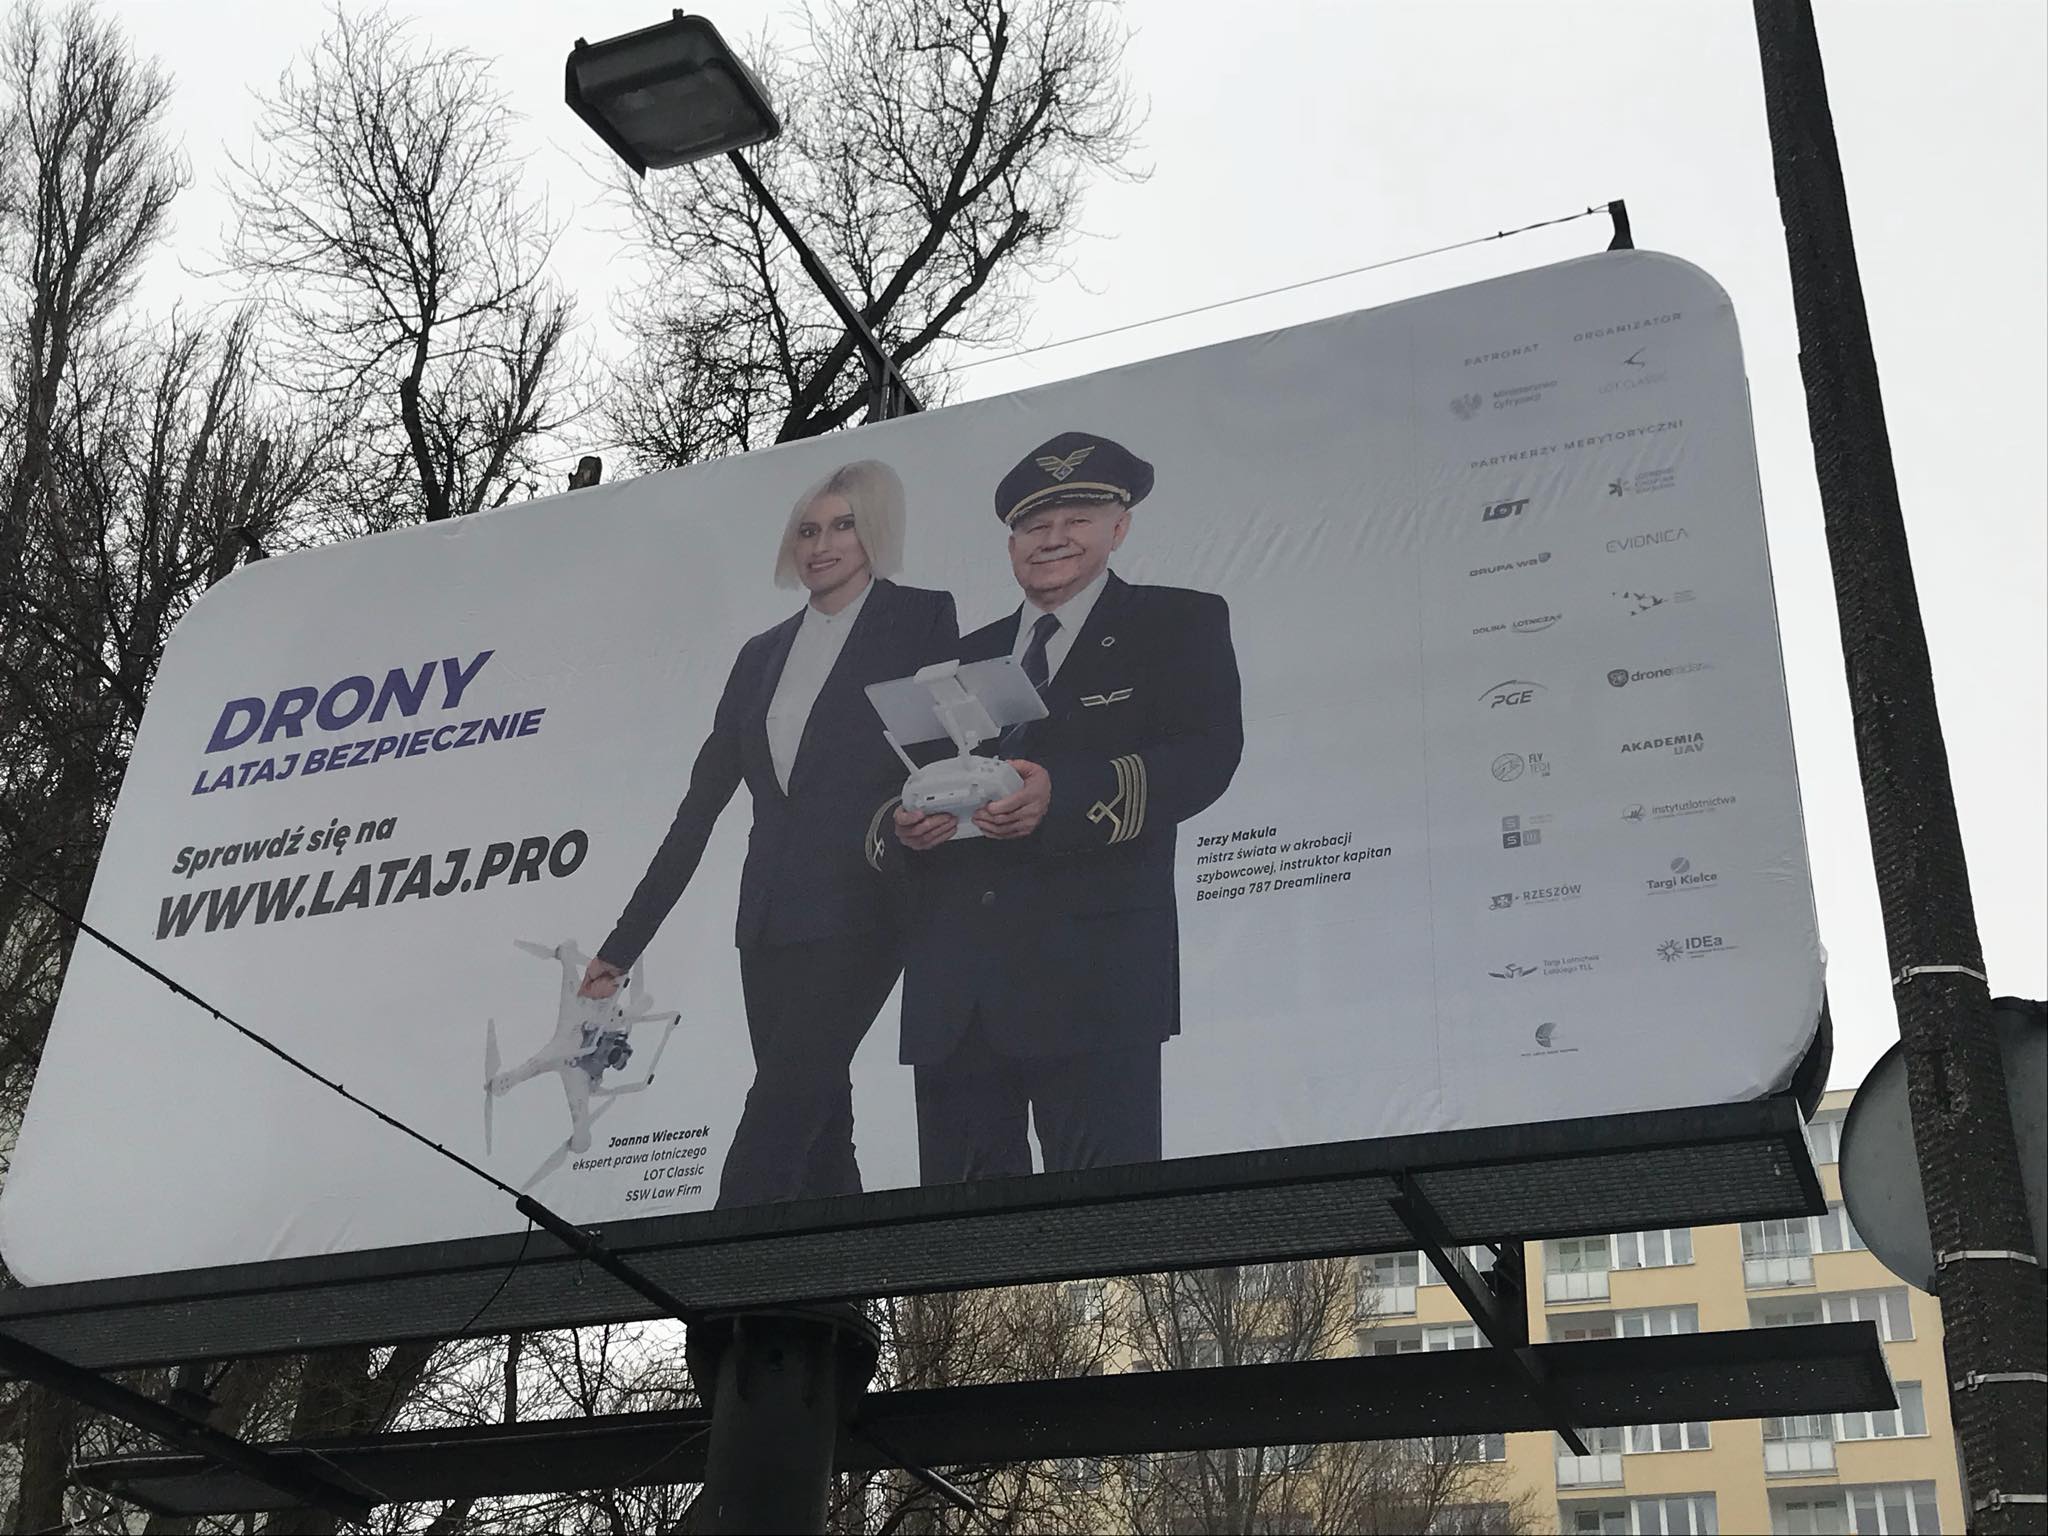 "Drony - lataj bezpiecznie" - billboard